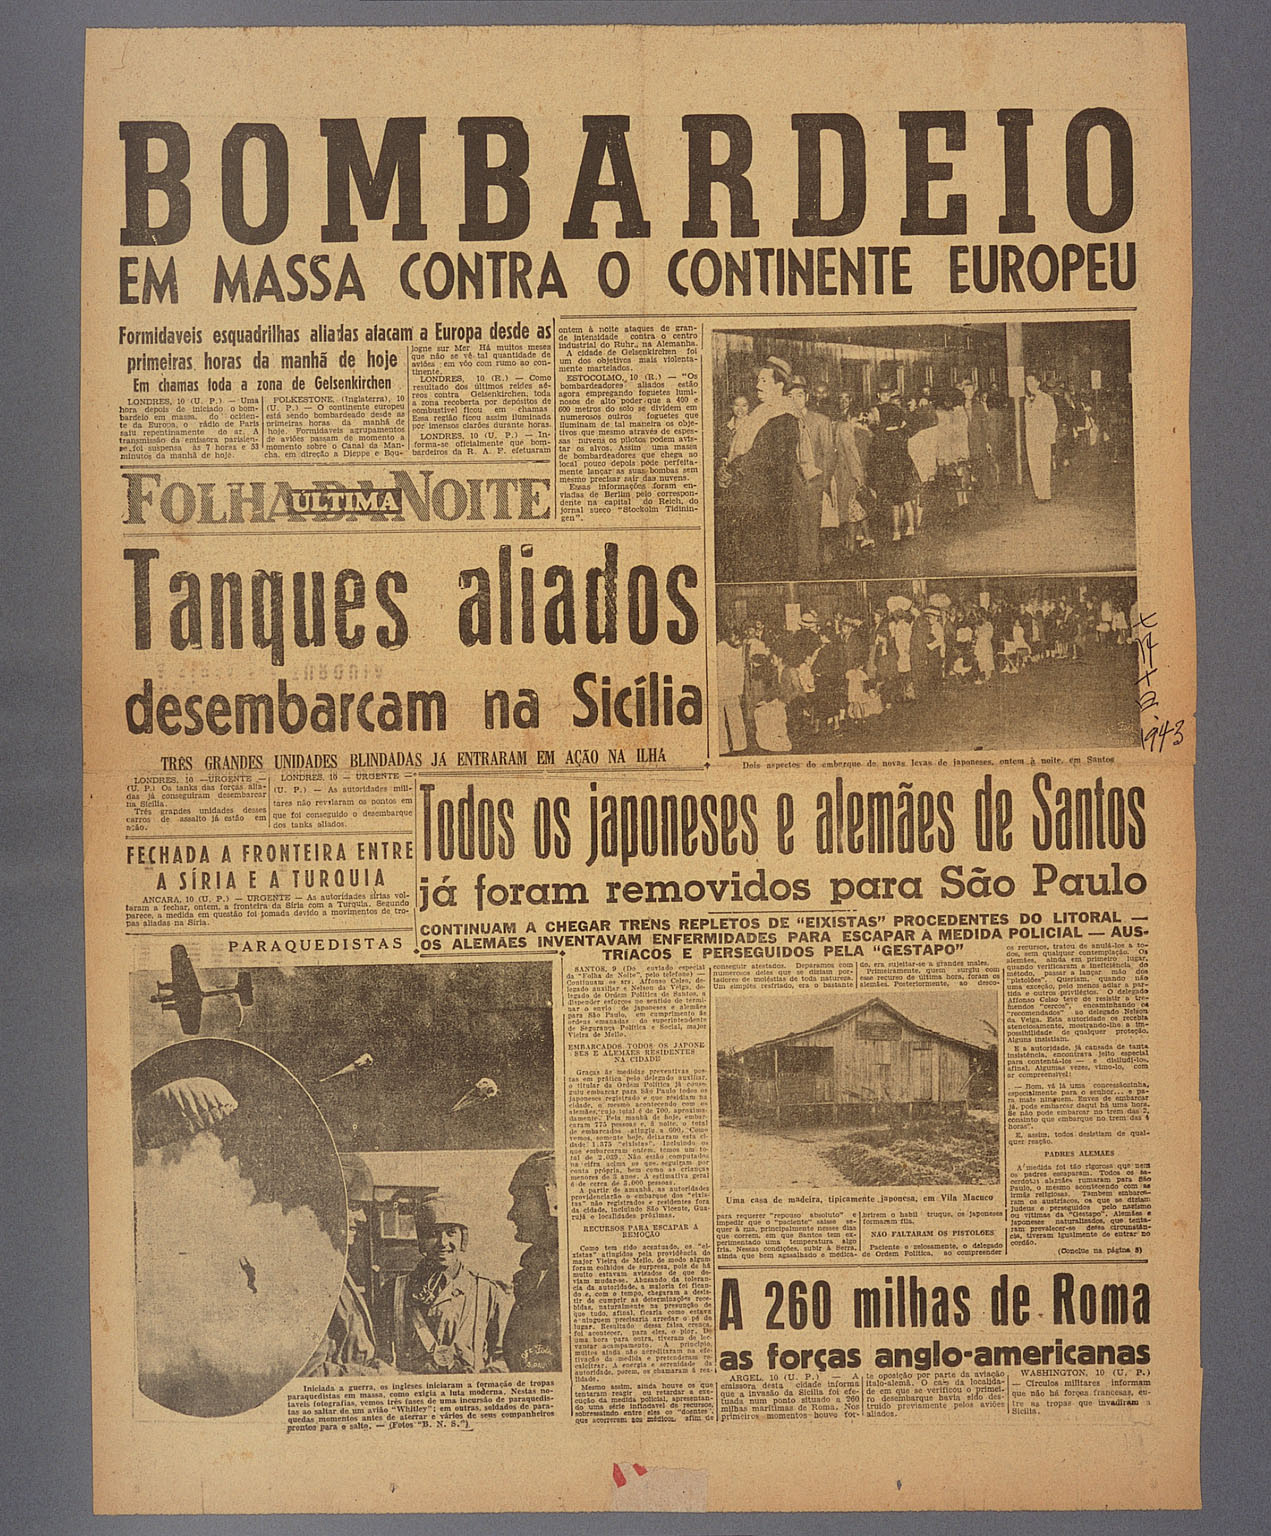 画像『サントスからの枢軸国民の強制立退きポルトガル語紙記事』